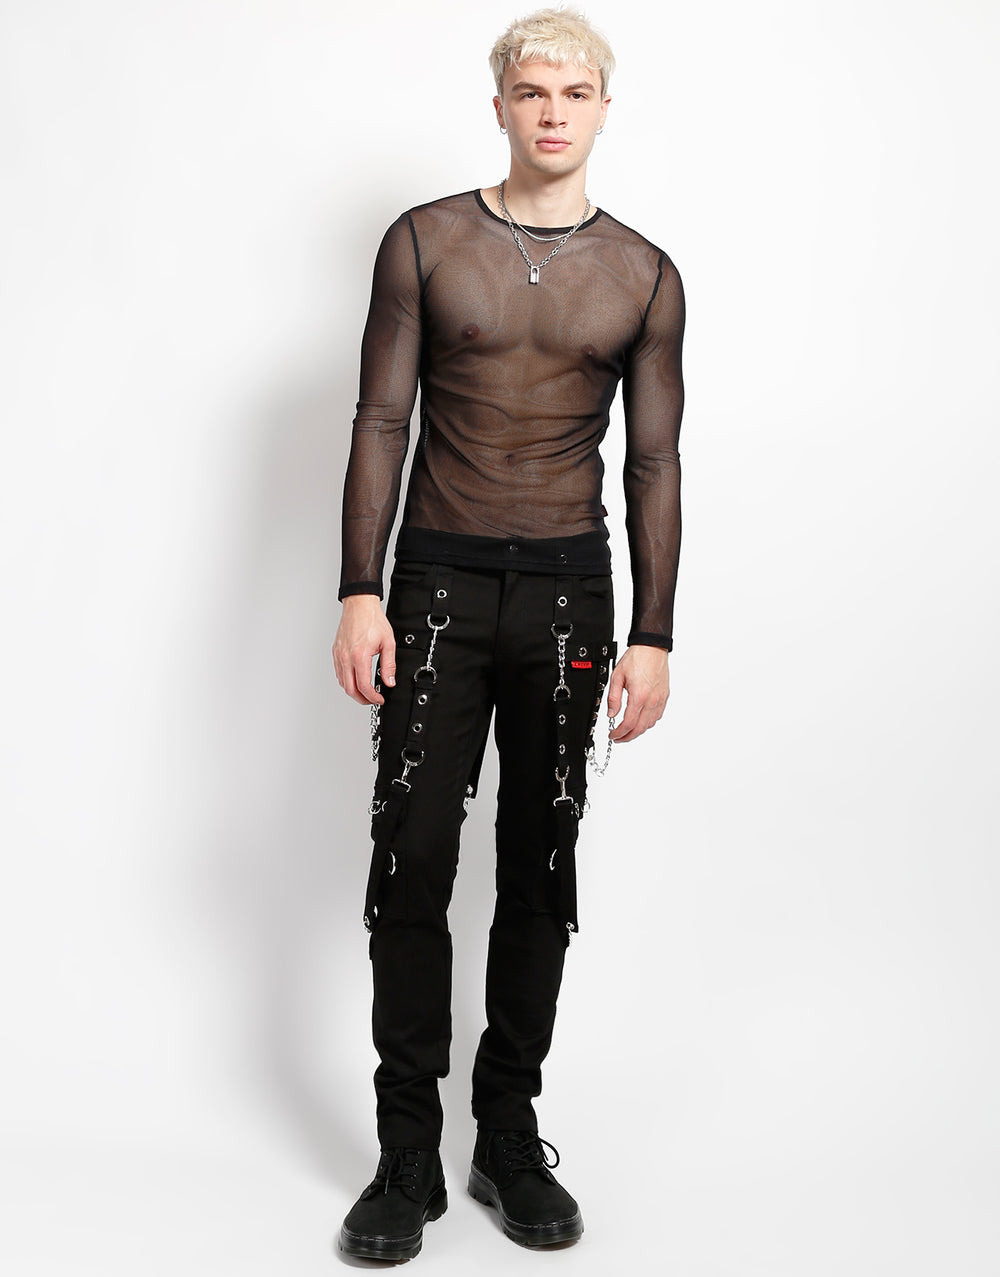 Black Fishnet shirt unisex one size